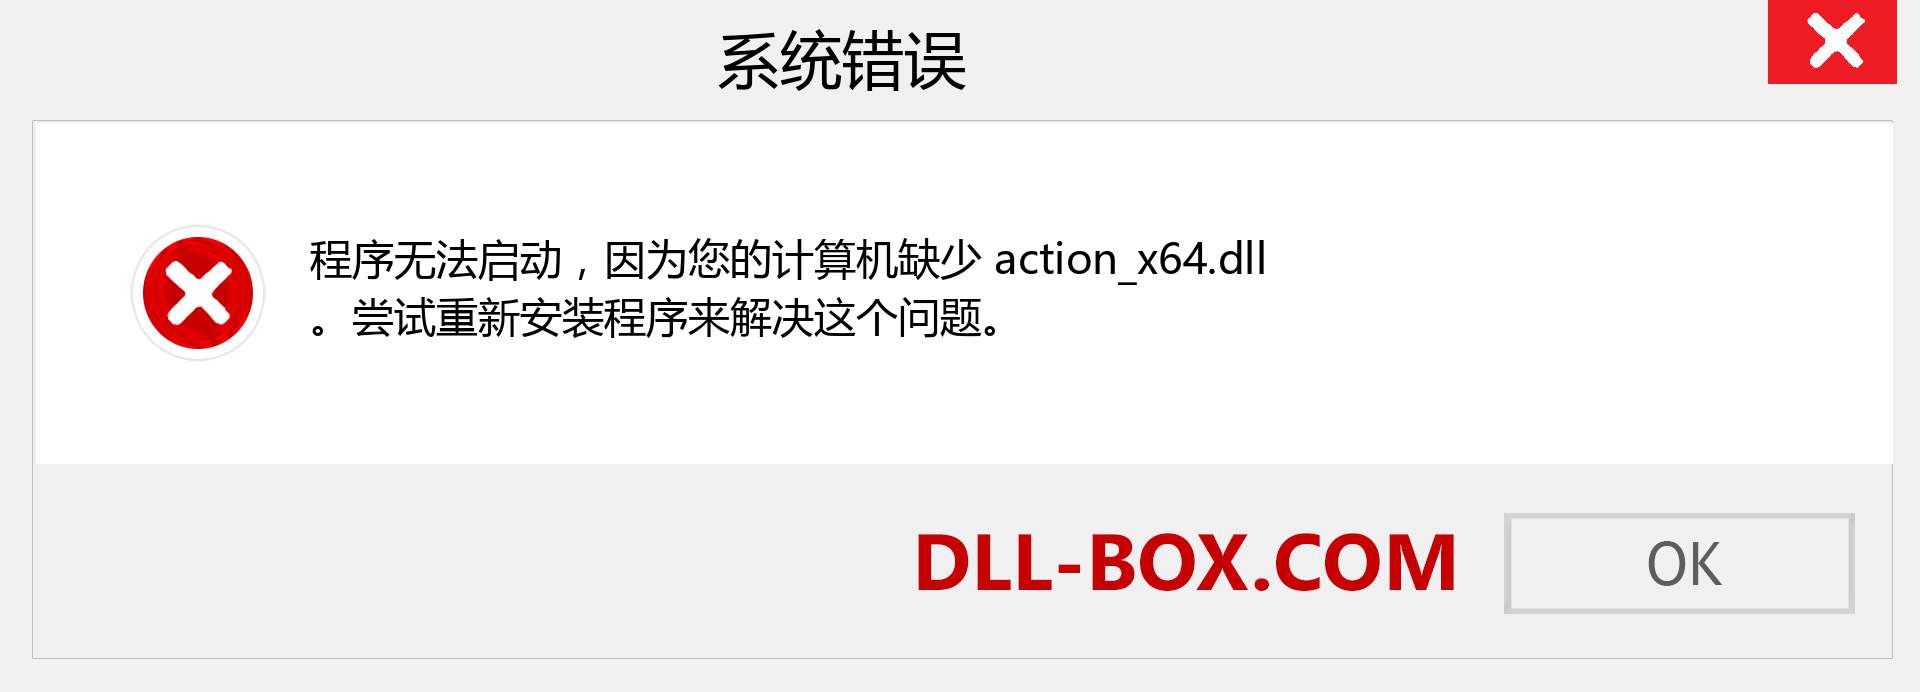 action_x64.dll 文件丢失？。 适用于 Windows 7、8、10 的下载 - 修复 Windows、照片、图像上的 action_x64 dll 丢失错误